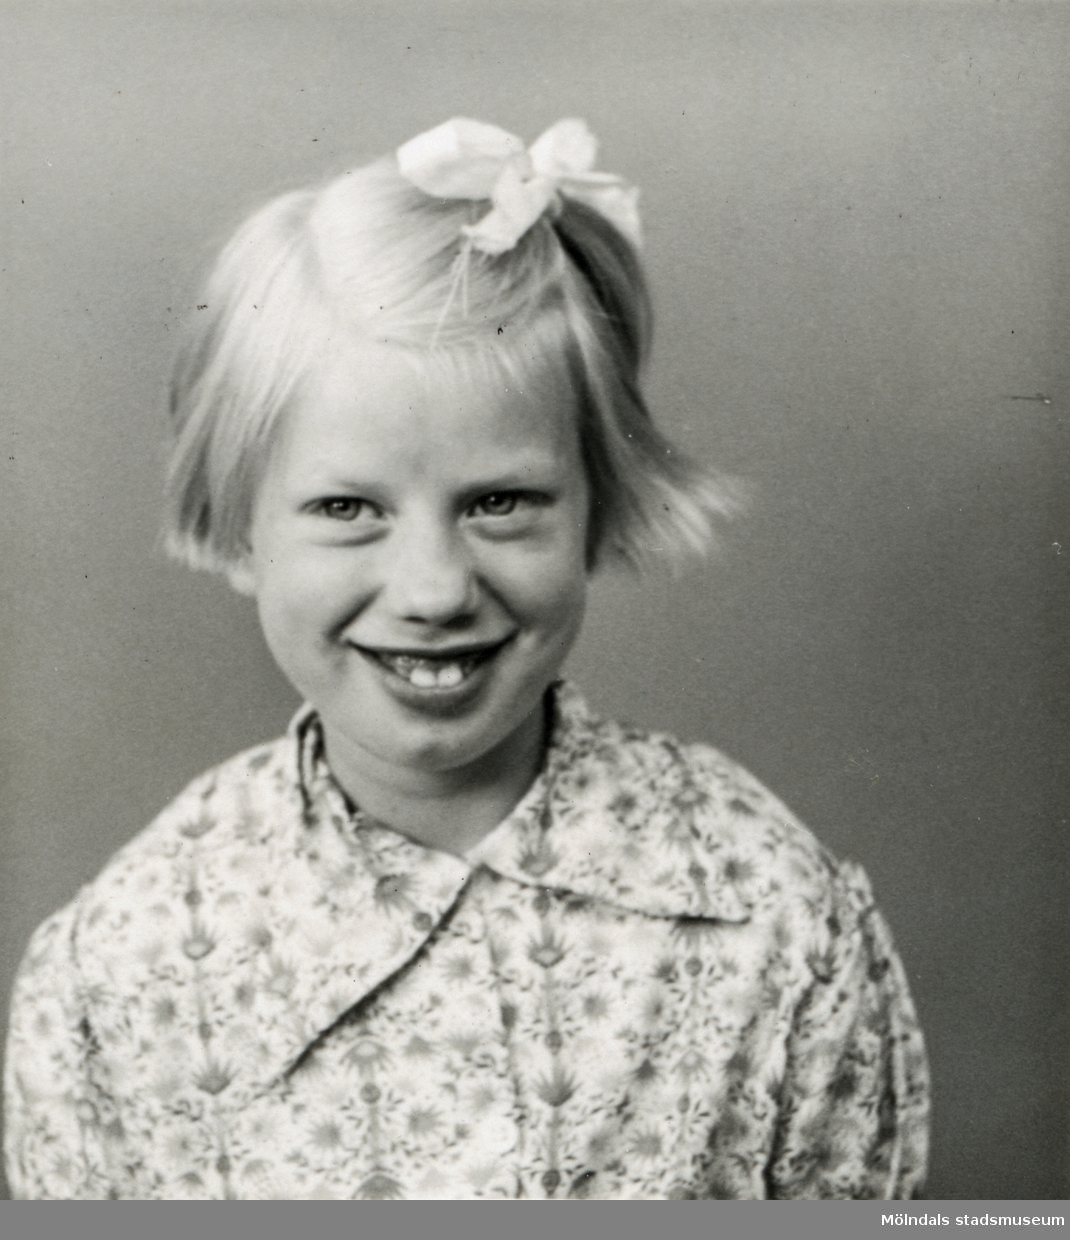 Porträtt av Maj Jernberg som ung flicka. Maj bodde på Streteredshemmet i Kållered troligen från 1970-1980-talet fram till början av 1990-talet.